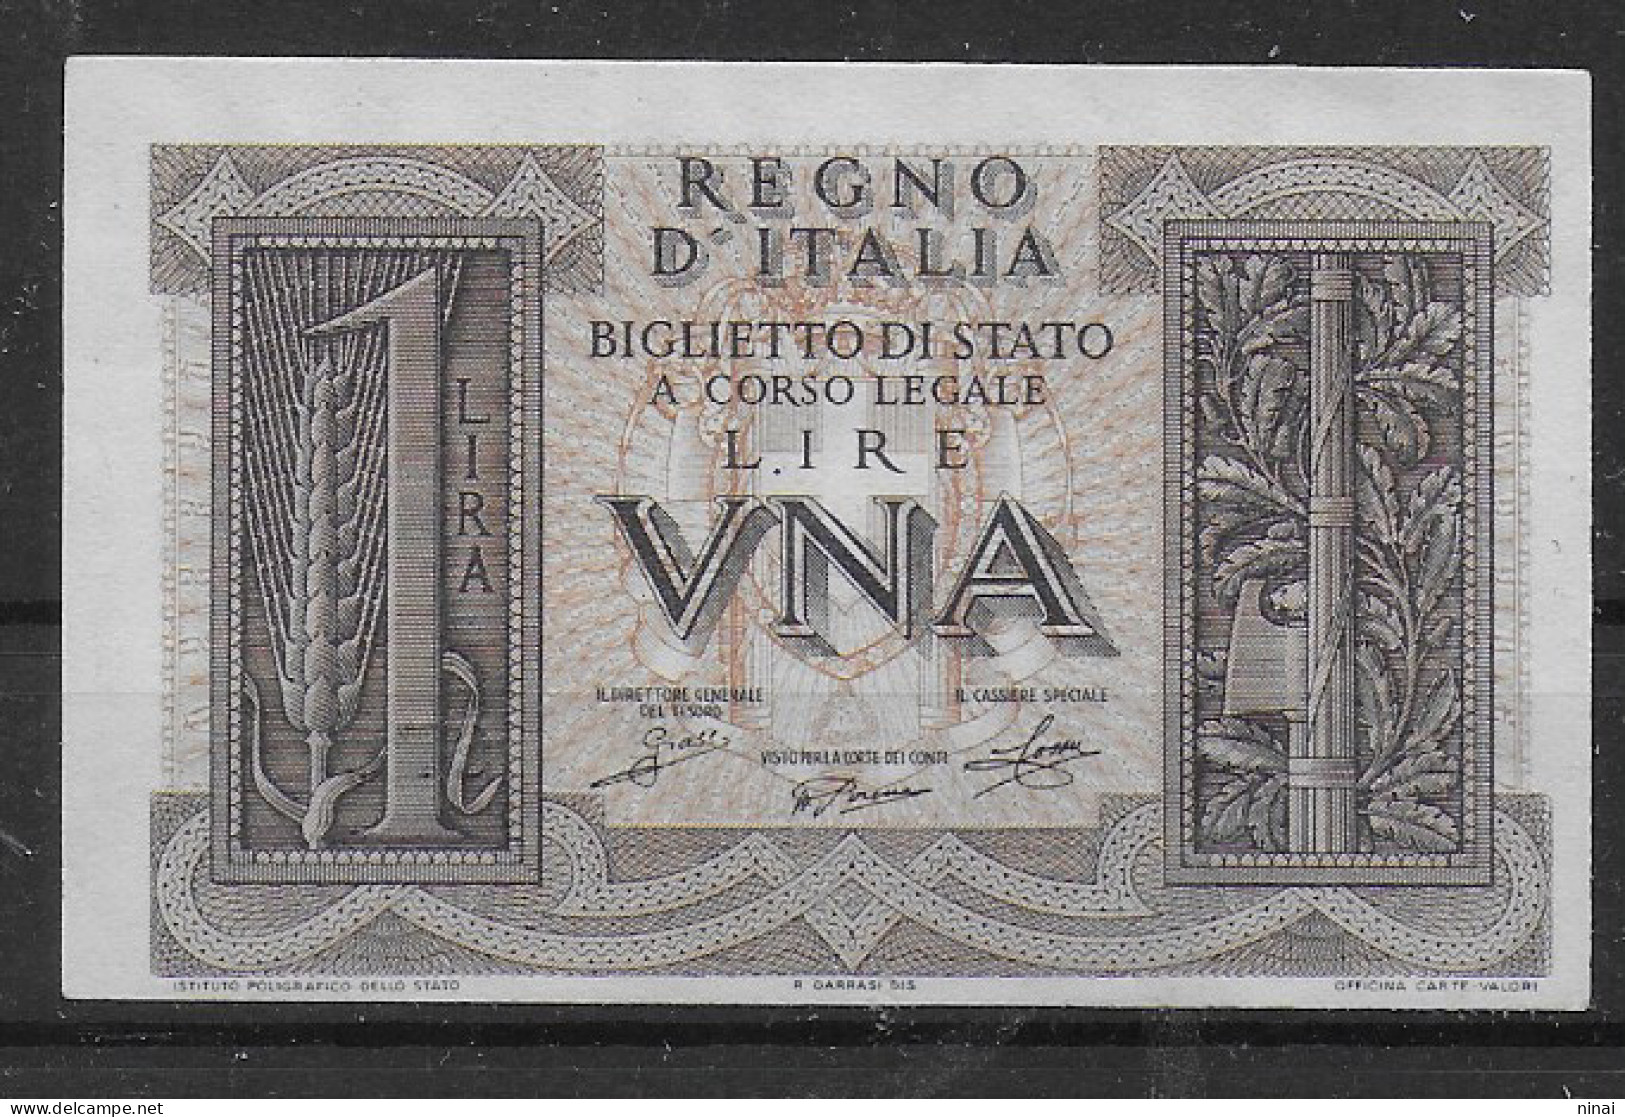 BANCONOTA 1939 UNA LIRA GRASSI/PORENA/COSSU FIOR DI STAMPA C1496A - Italië – 1 Lira